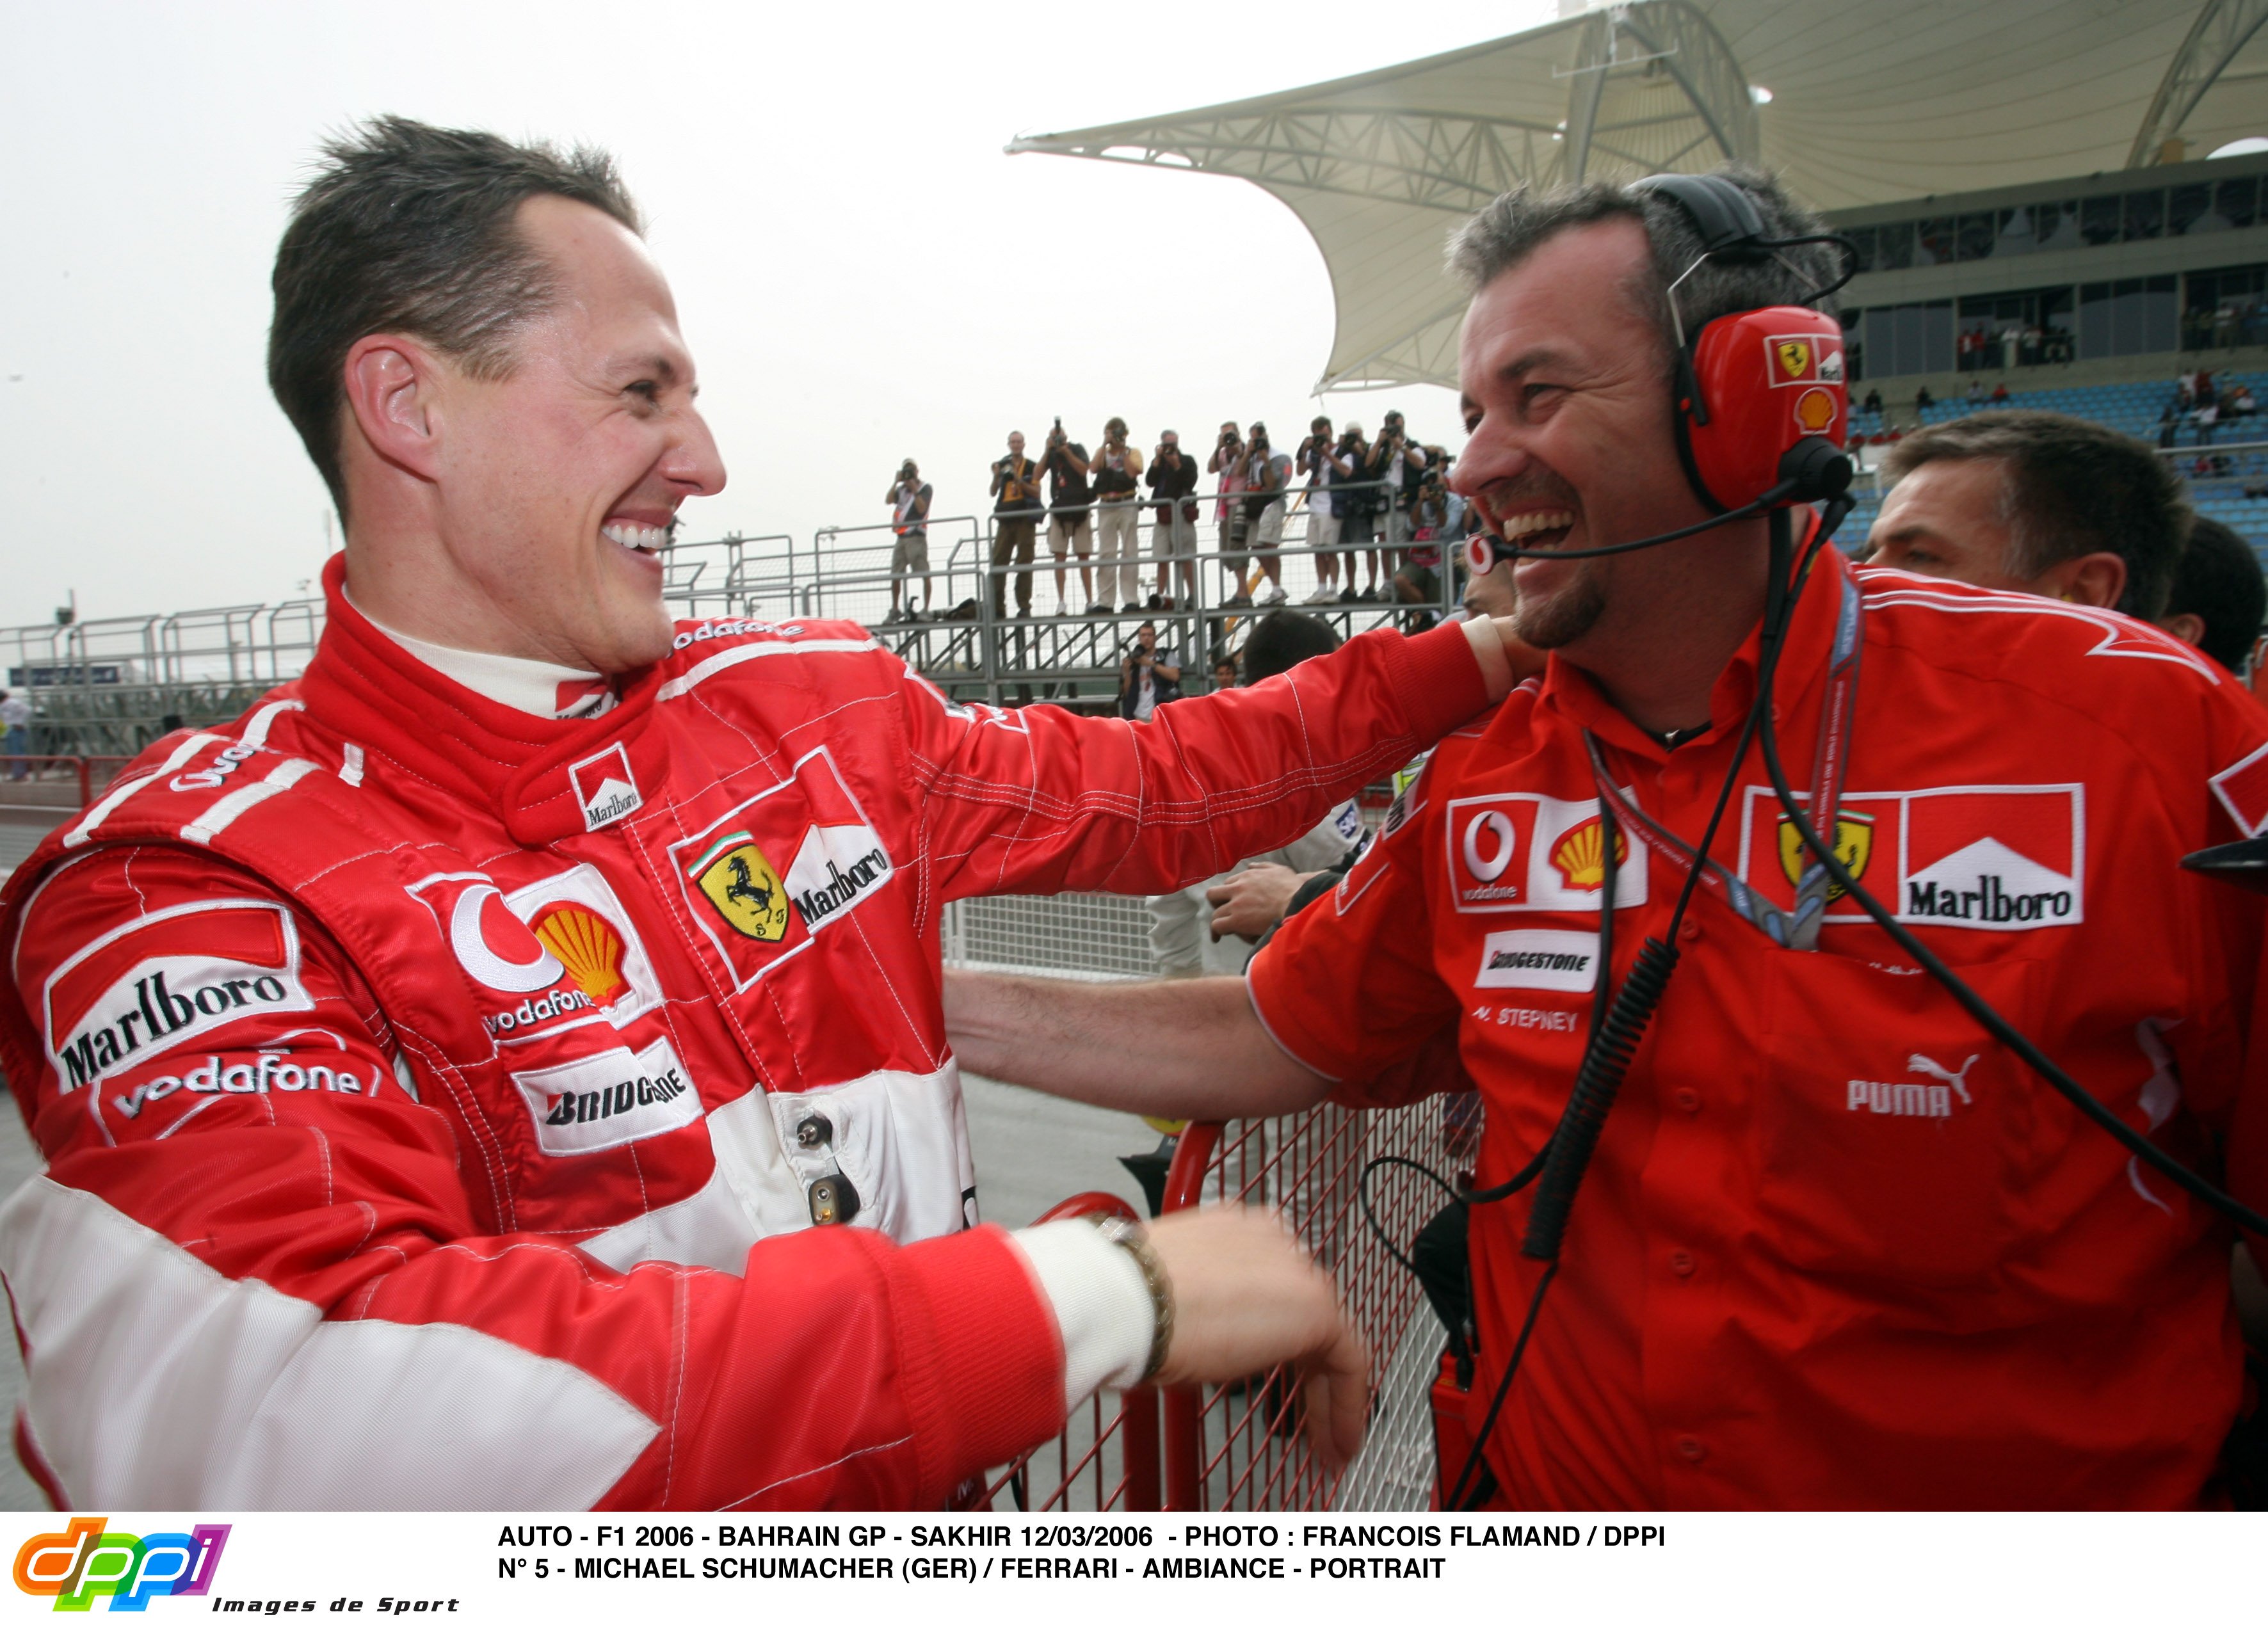 Vergonya mundial per una entrevista falsa a Michael Schumacher